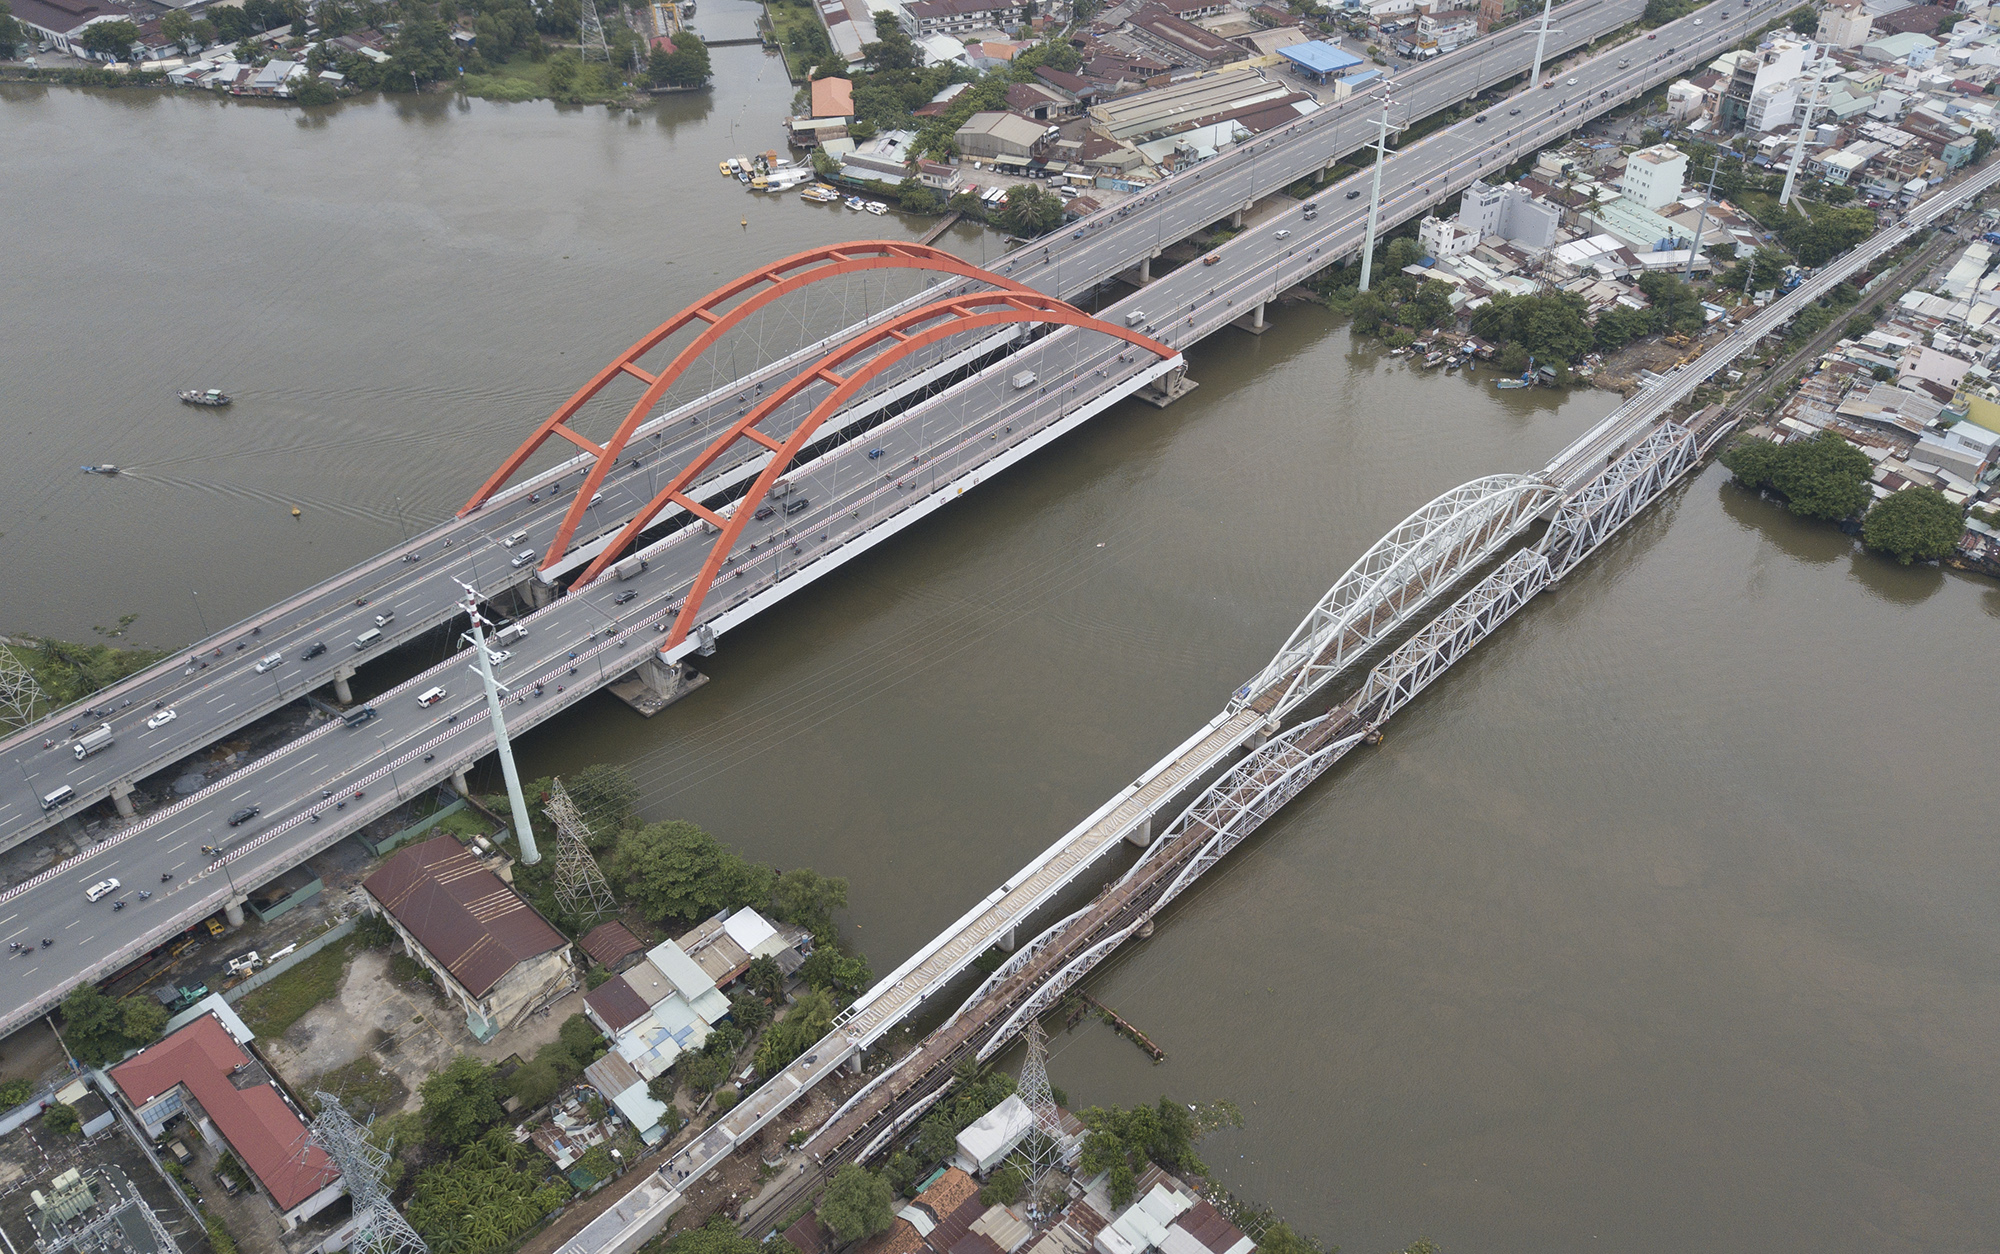 Cầu sắt Bình Lợi – cây cầu đầu tiên vượt sông Sài Gòn, nối quận Bình Thạnh và Thủ Đức (TP.HCM) được xây dựng từ những năm đầu 1900 và đưa vào sử dụng từ năm 1902. Cầu tuổi đời cả thế kỷ, xuống cấp và có tĩnh không thấp chỉ 1,8m, gây cản trở giao thông thuỷ.